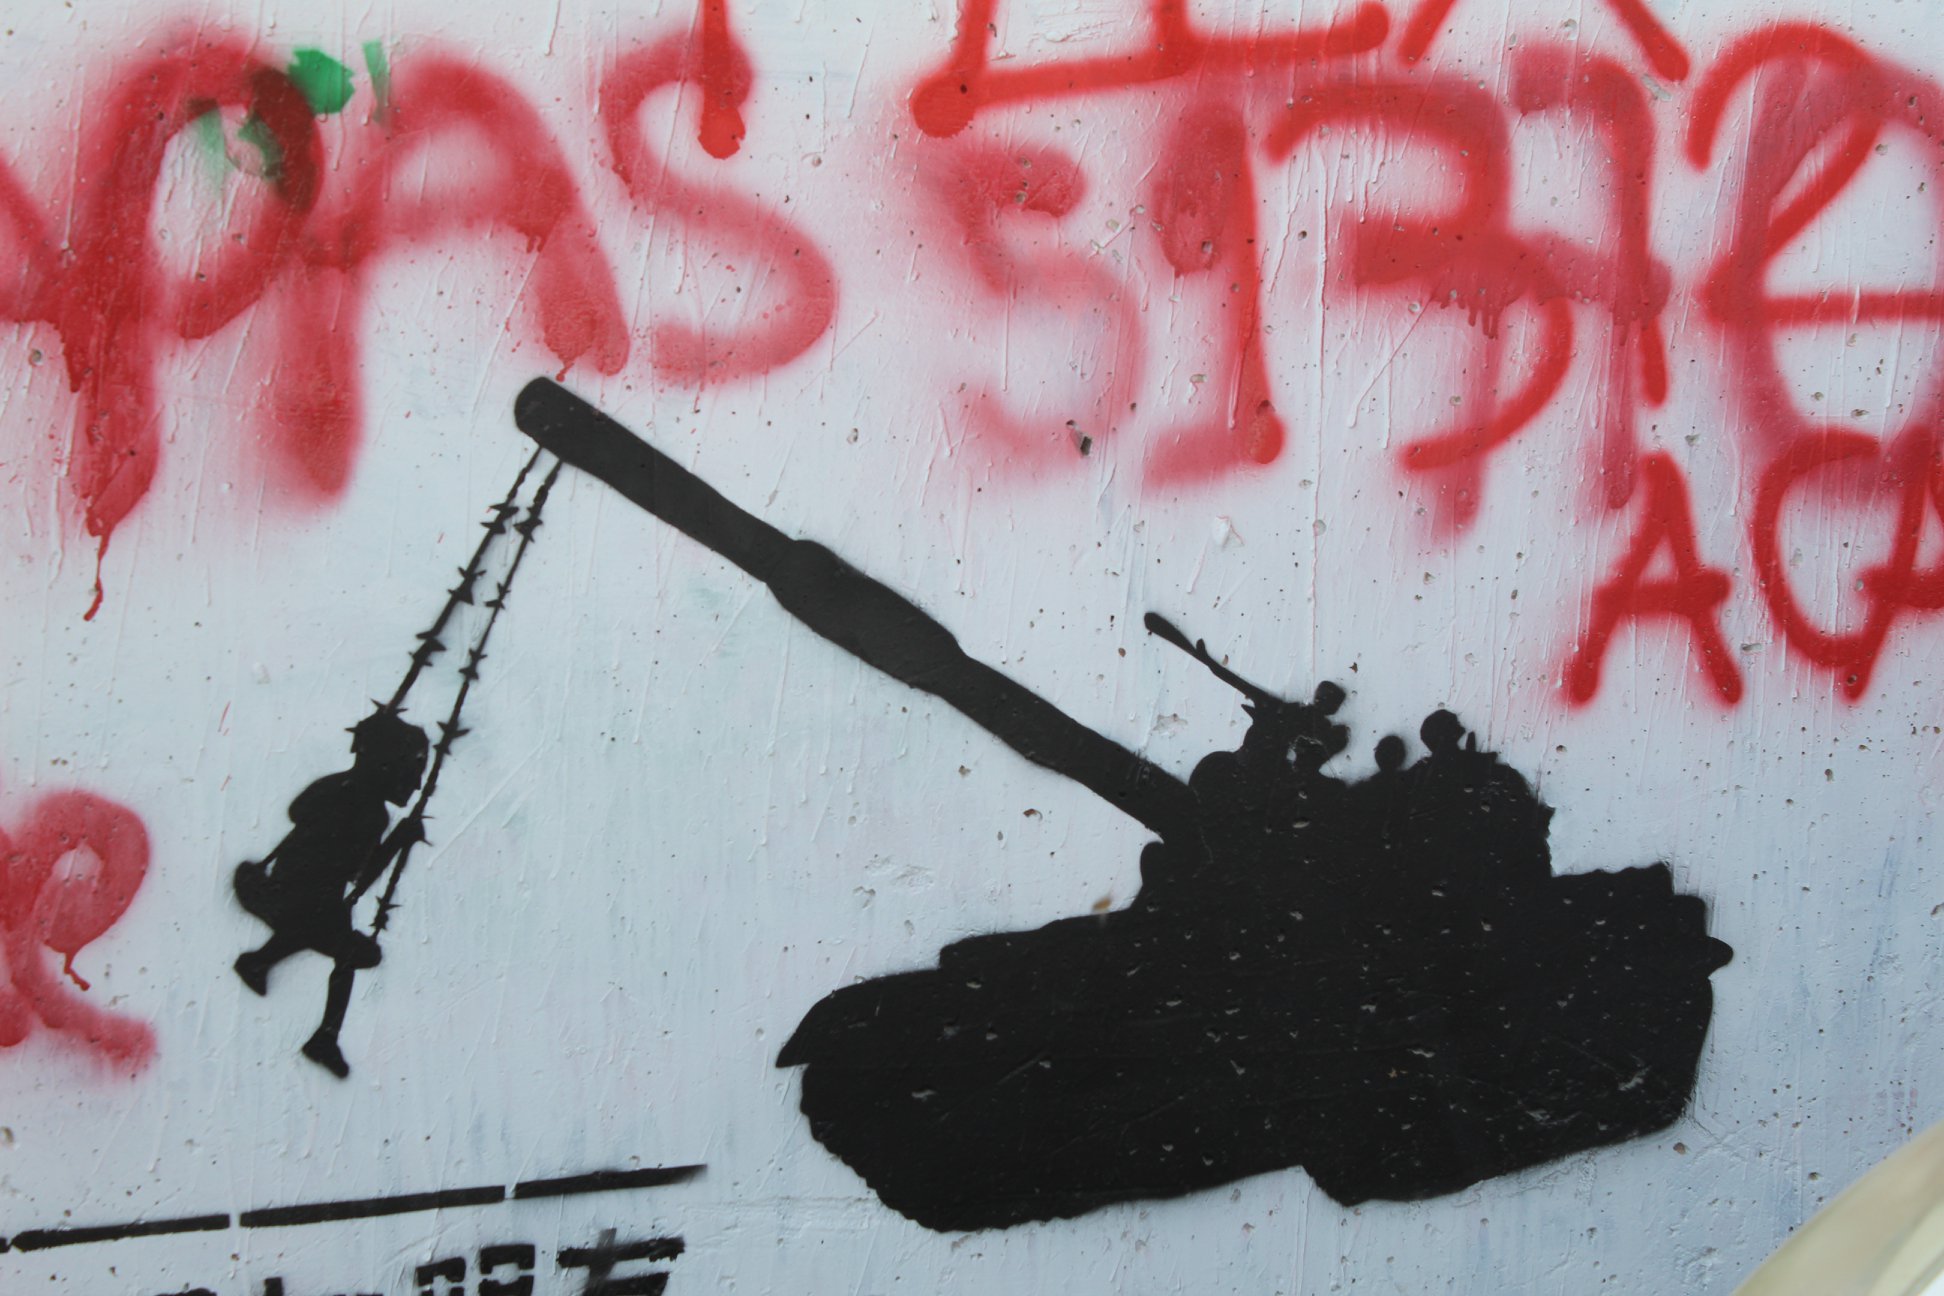 Grafite em Belém, na Palestina, no Muro de Separação, representa o cotidiano da militarização da vida com menina brincando com um blindado como se fosse um balanço. Foto: Julio Santos Filho/EAPPI